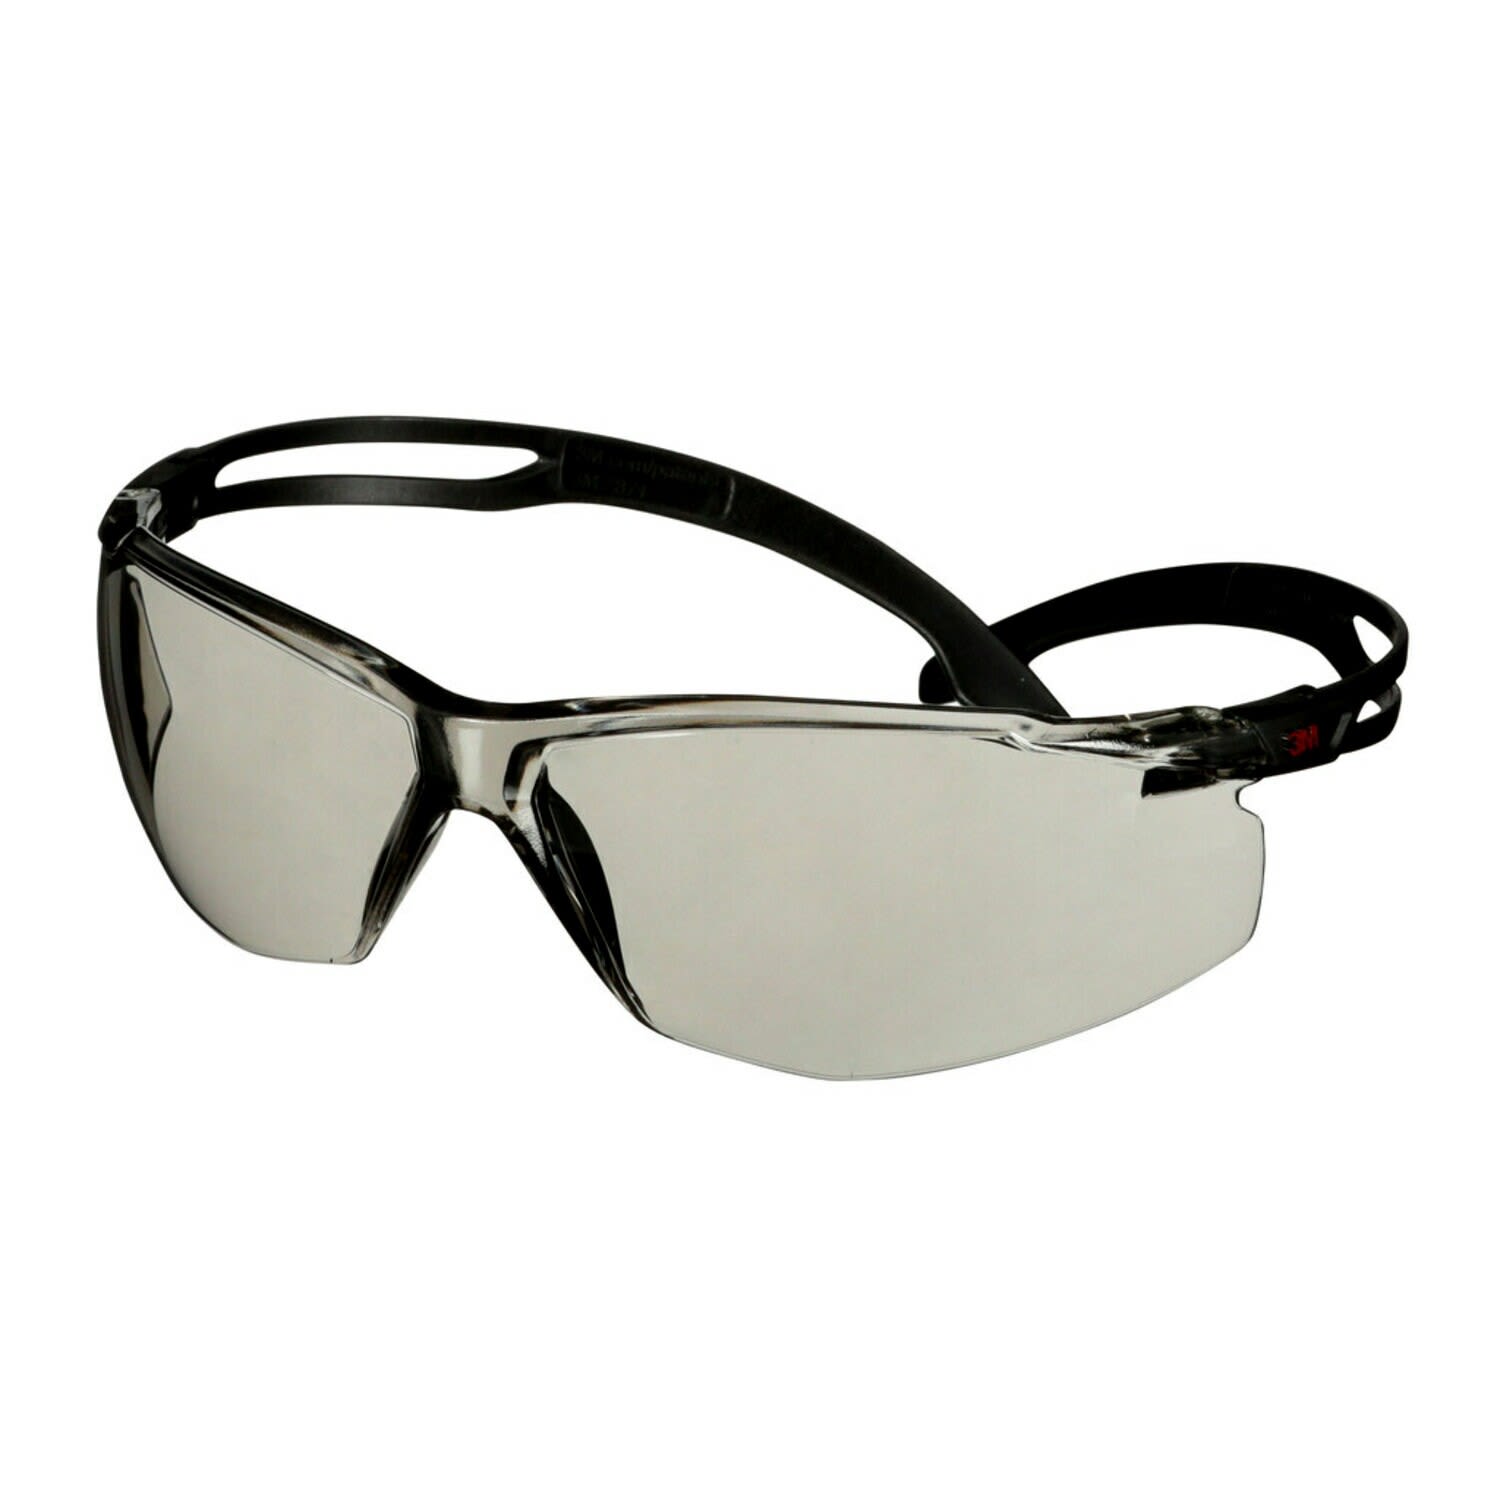 3M SecureFit 500 Safety Glasses, Black f